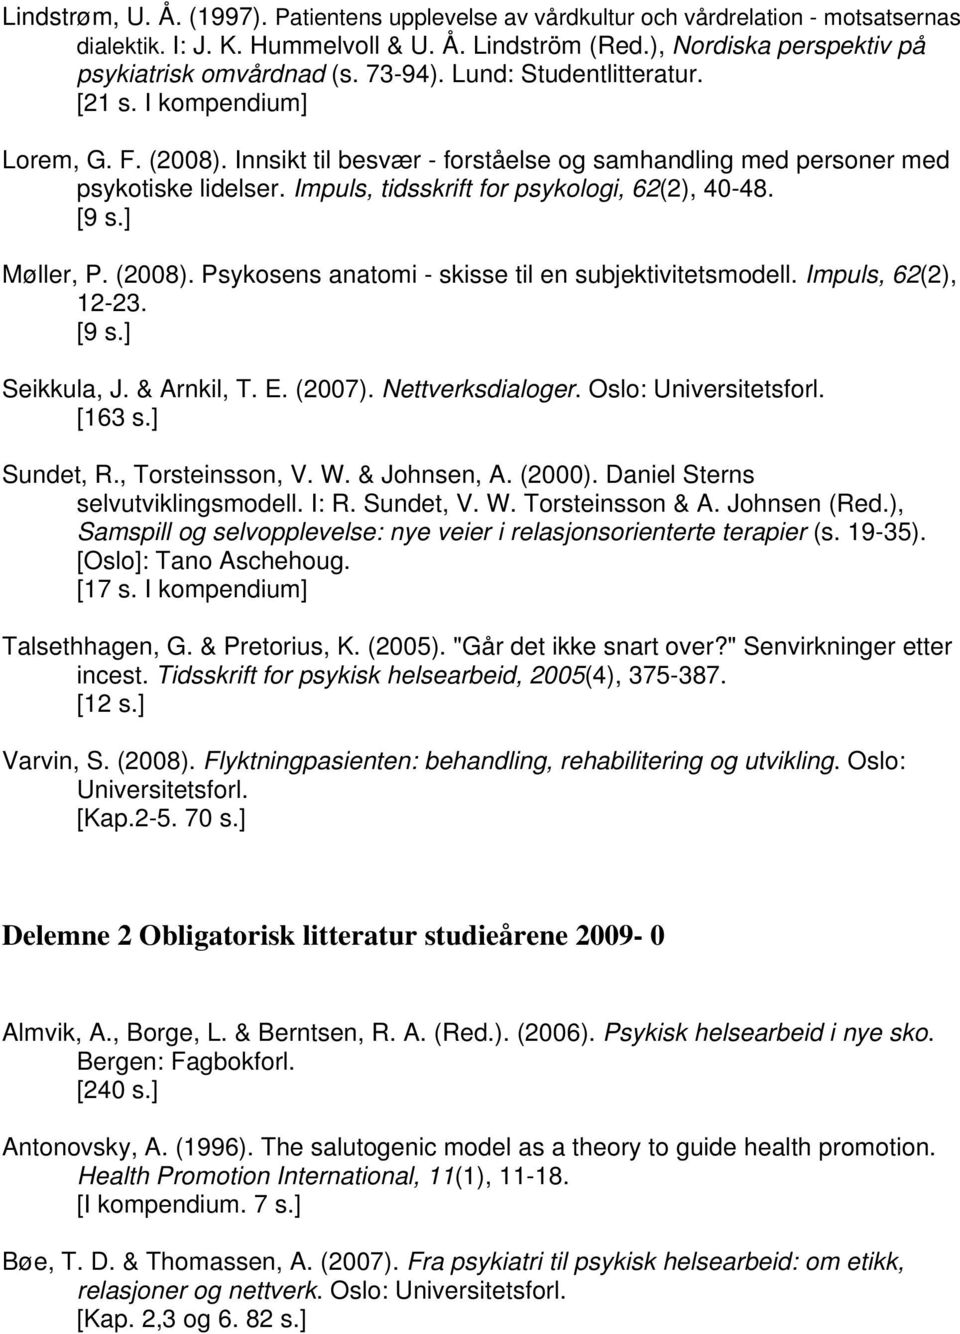 Impuls, tidsskrift for psykologi, 62(2), 40-48. Møller, P. (2008). Psykosens anatomi - skisse til en subjektivitetsmodell. Impuls, 62(2), 12-23. Seikkula, J. & Arnkil, T. E. (2007). Nettverksdialoger.